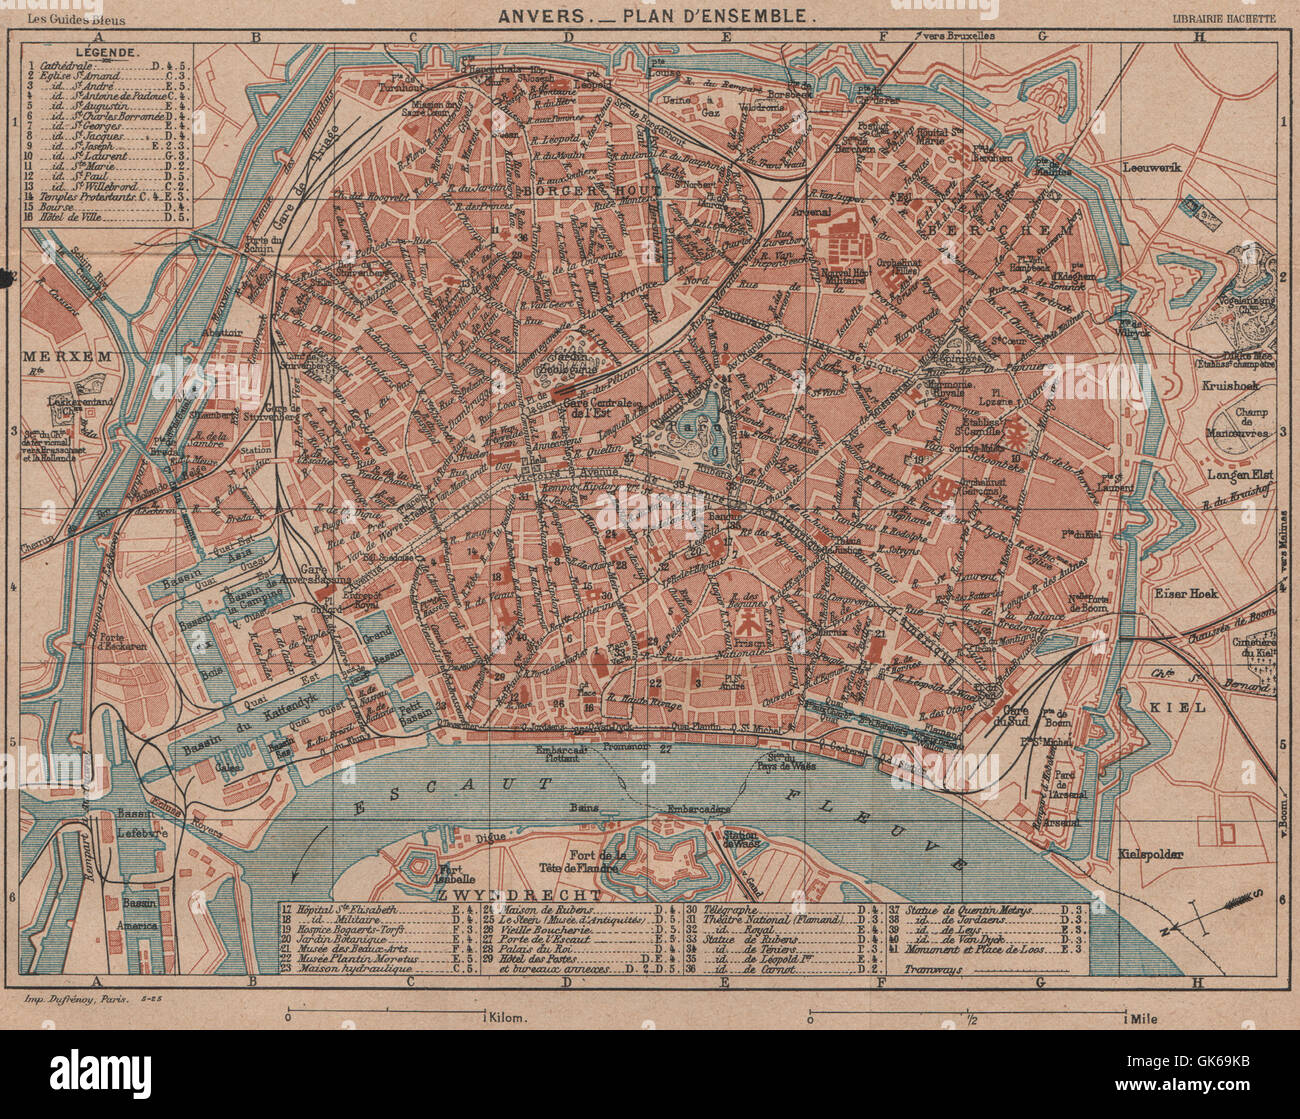 ANTWERPEN ANVERS. Vintage town city map plan d'ensemble ville. Belgium, 1920 Stock Photo